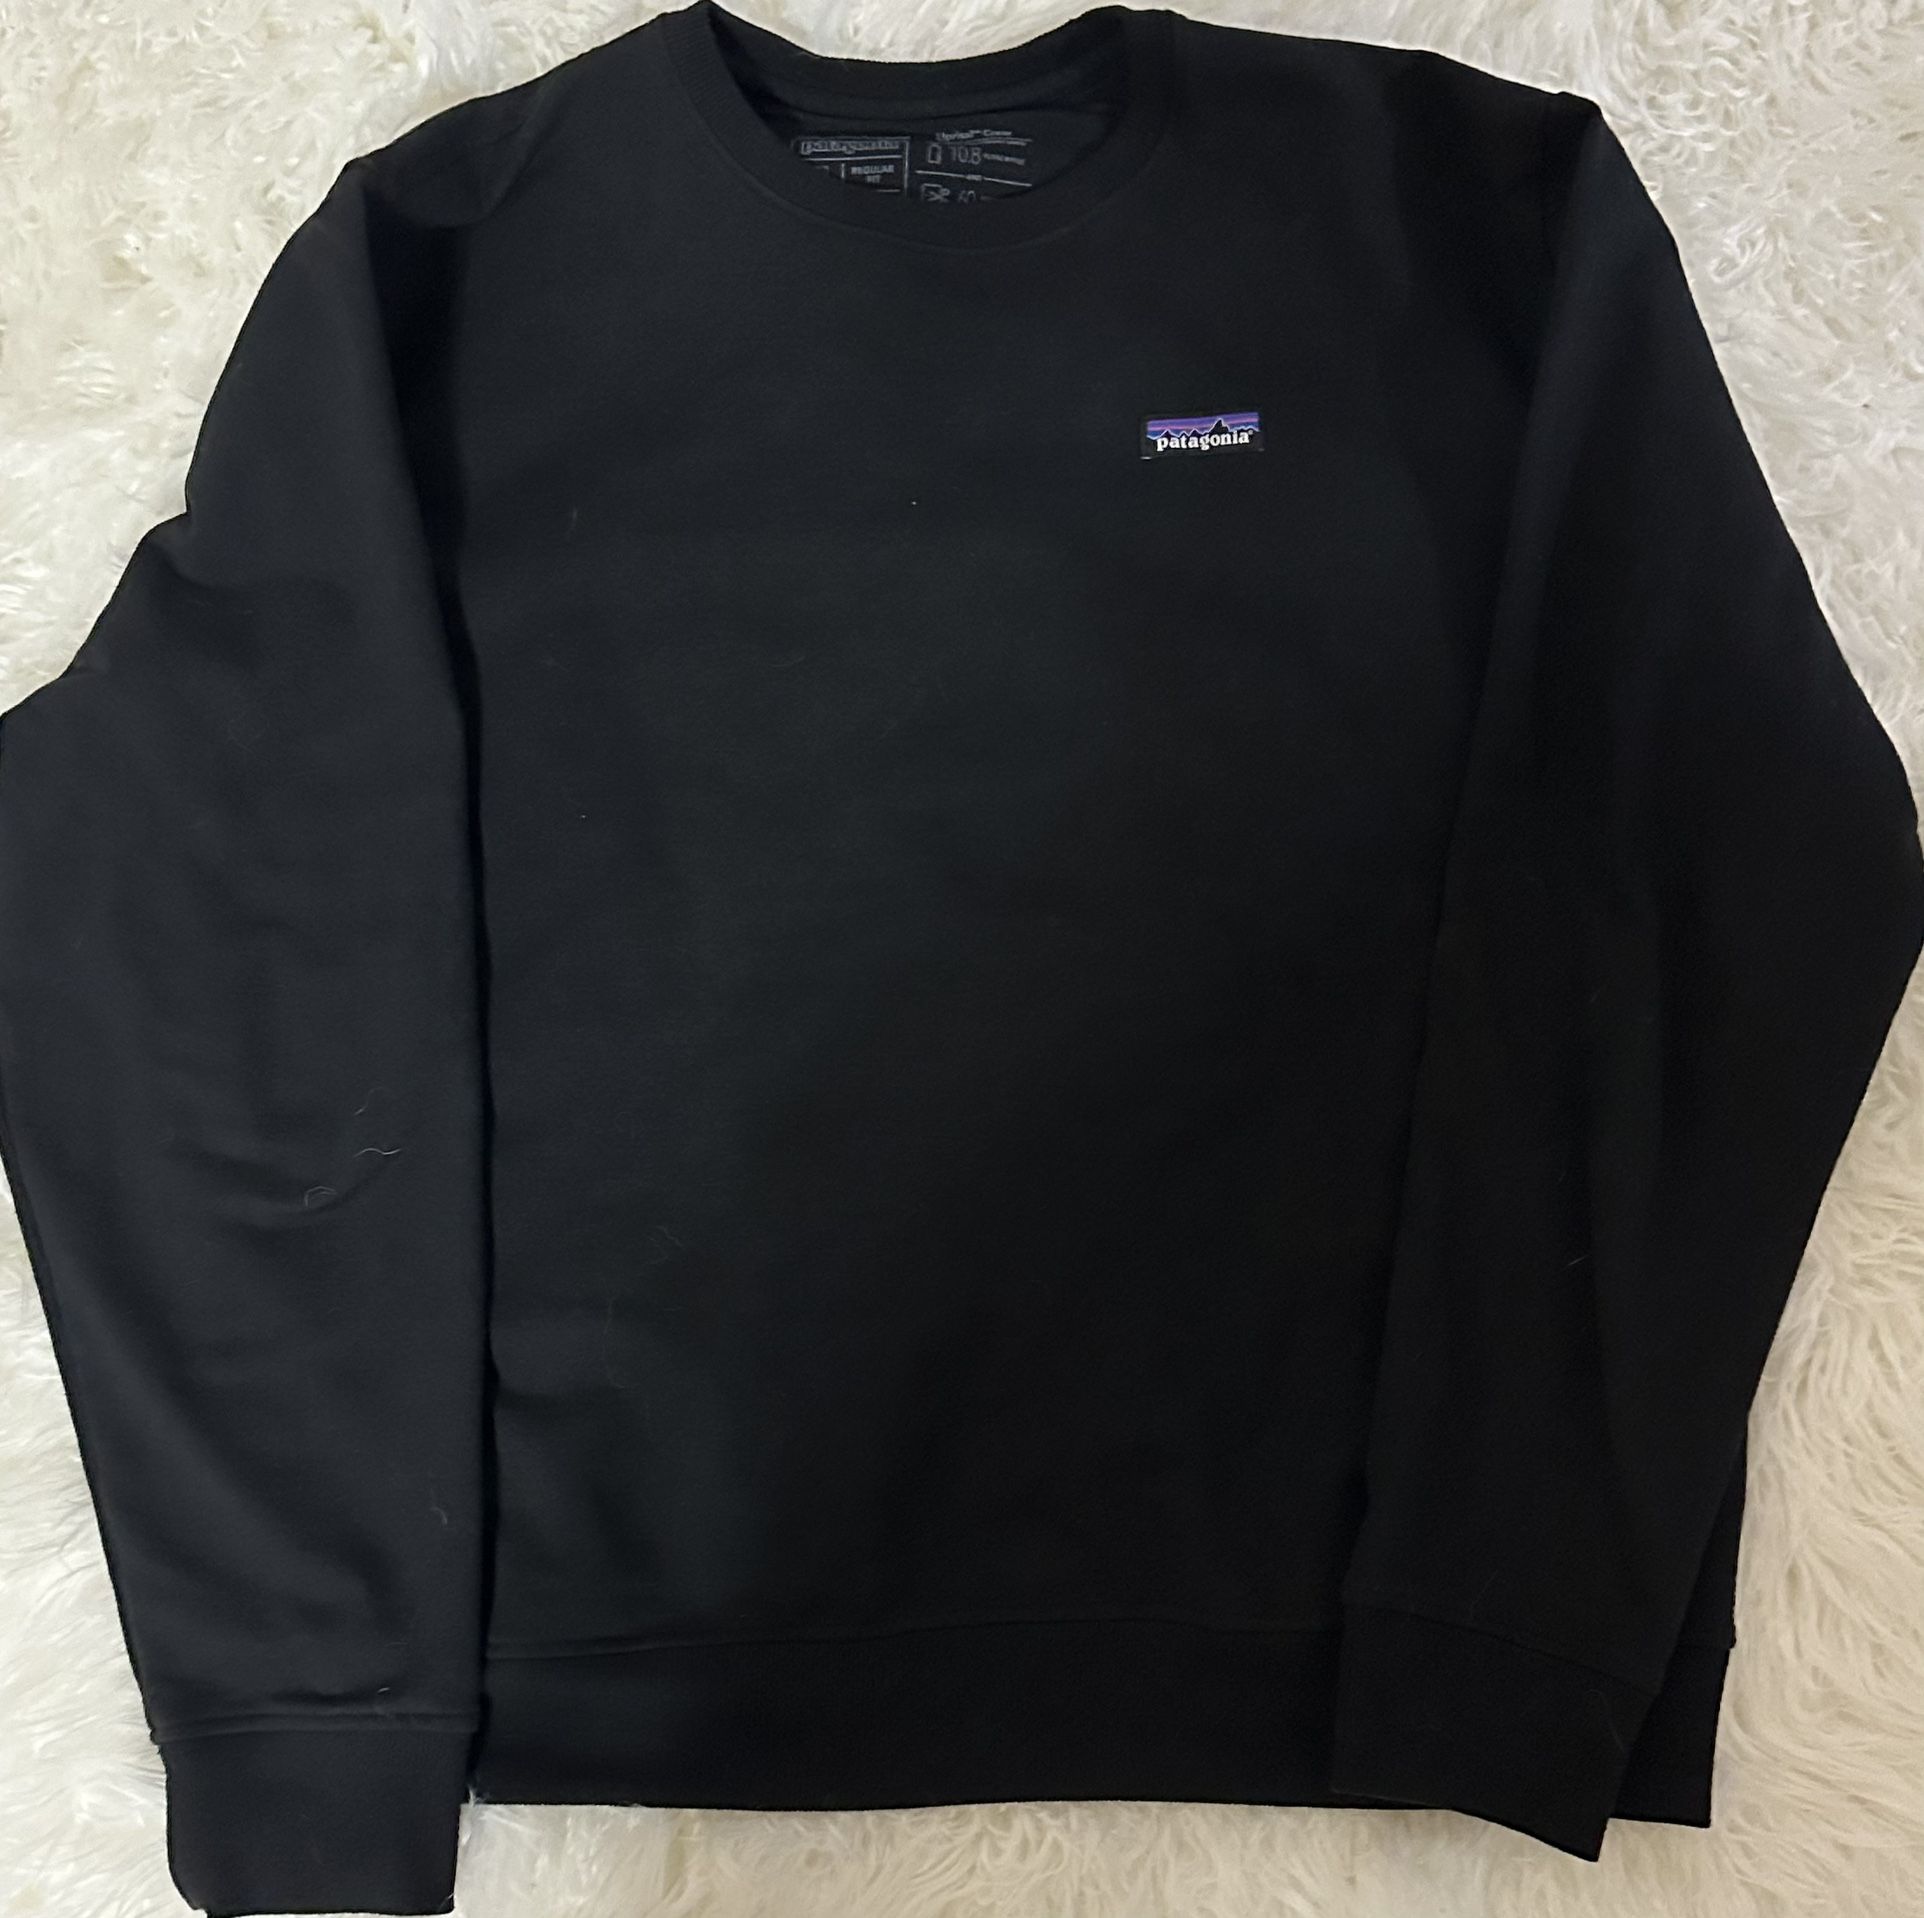 Patagonia Crewneck Sweatshirt Size XL